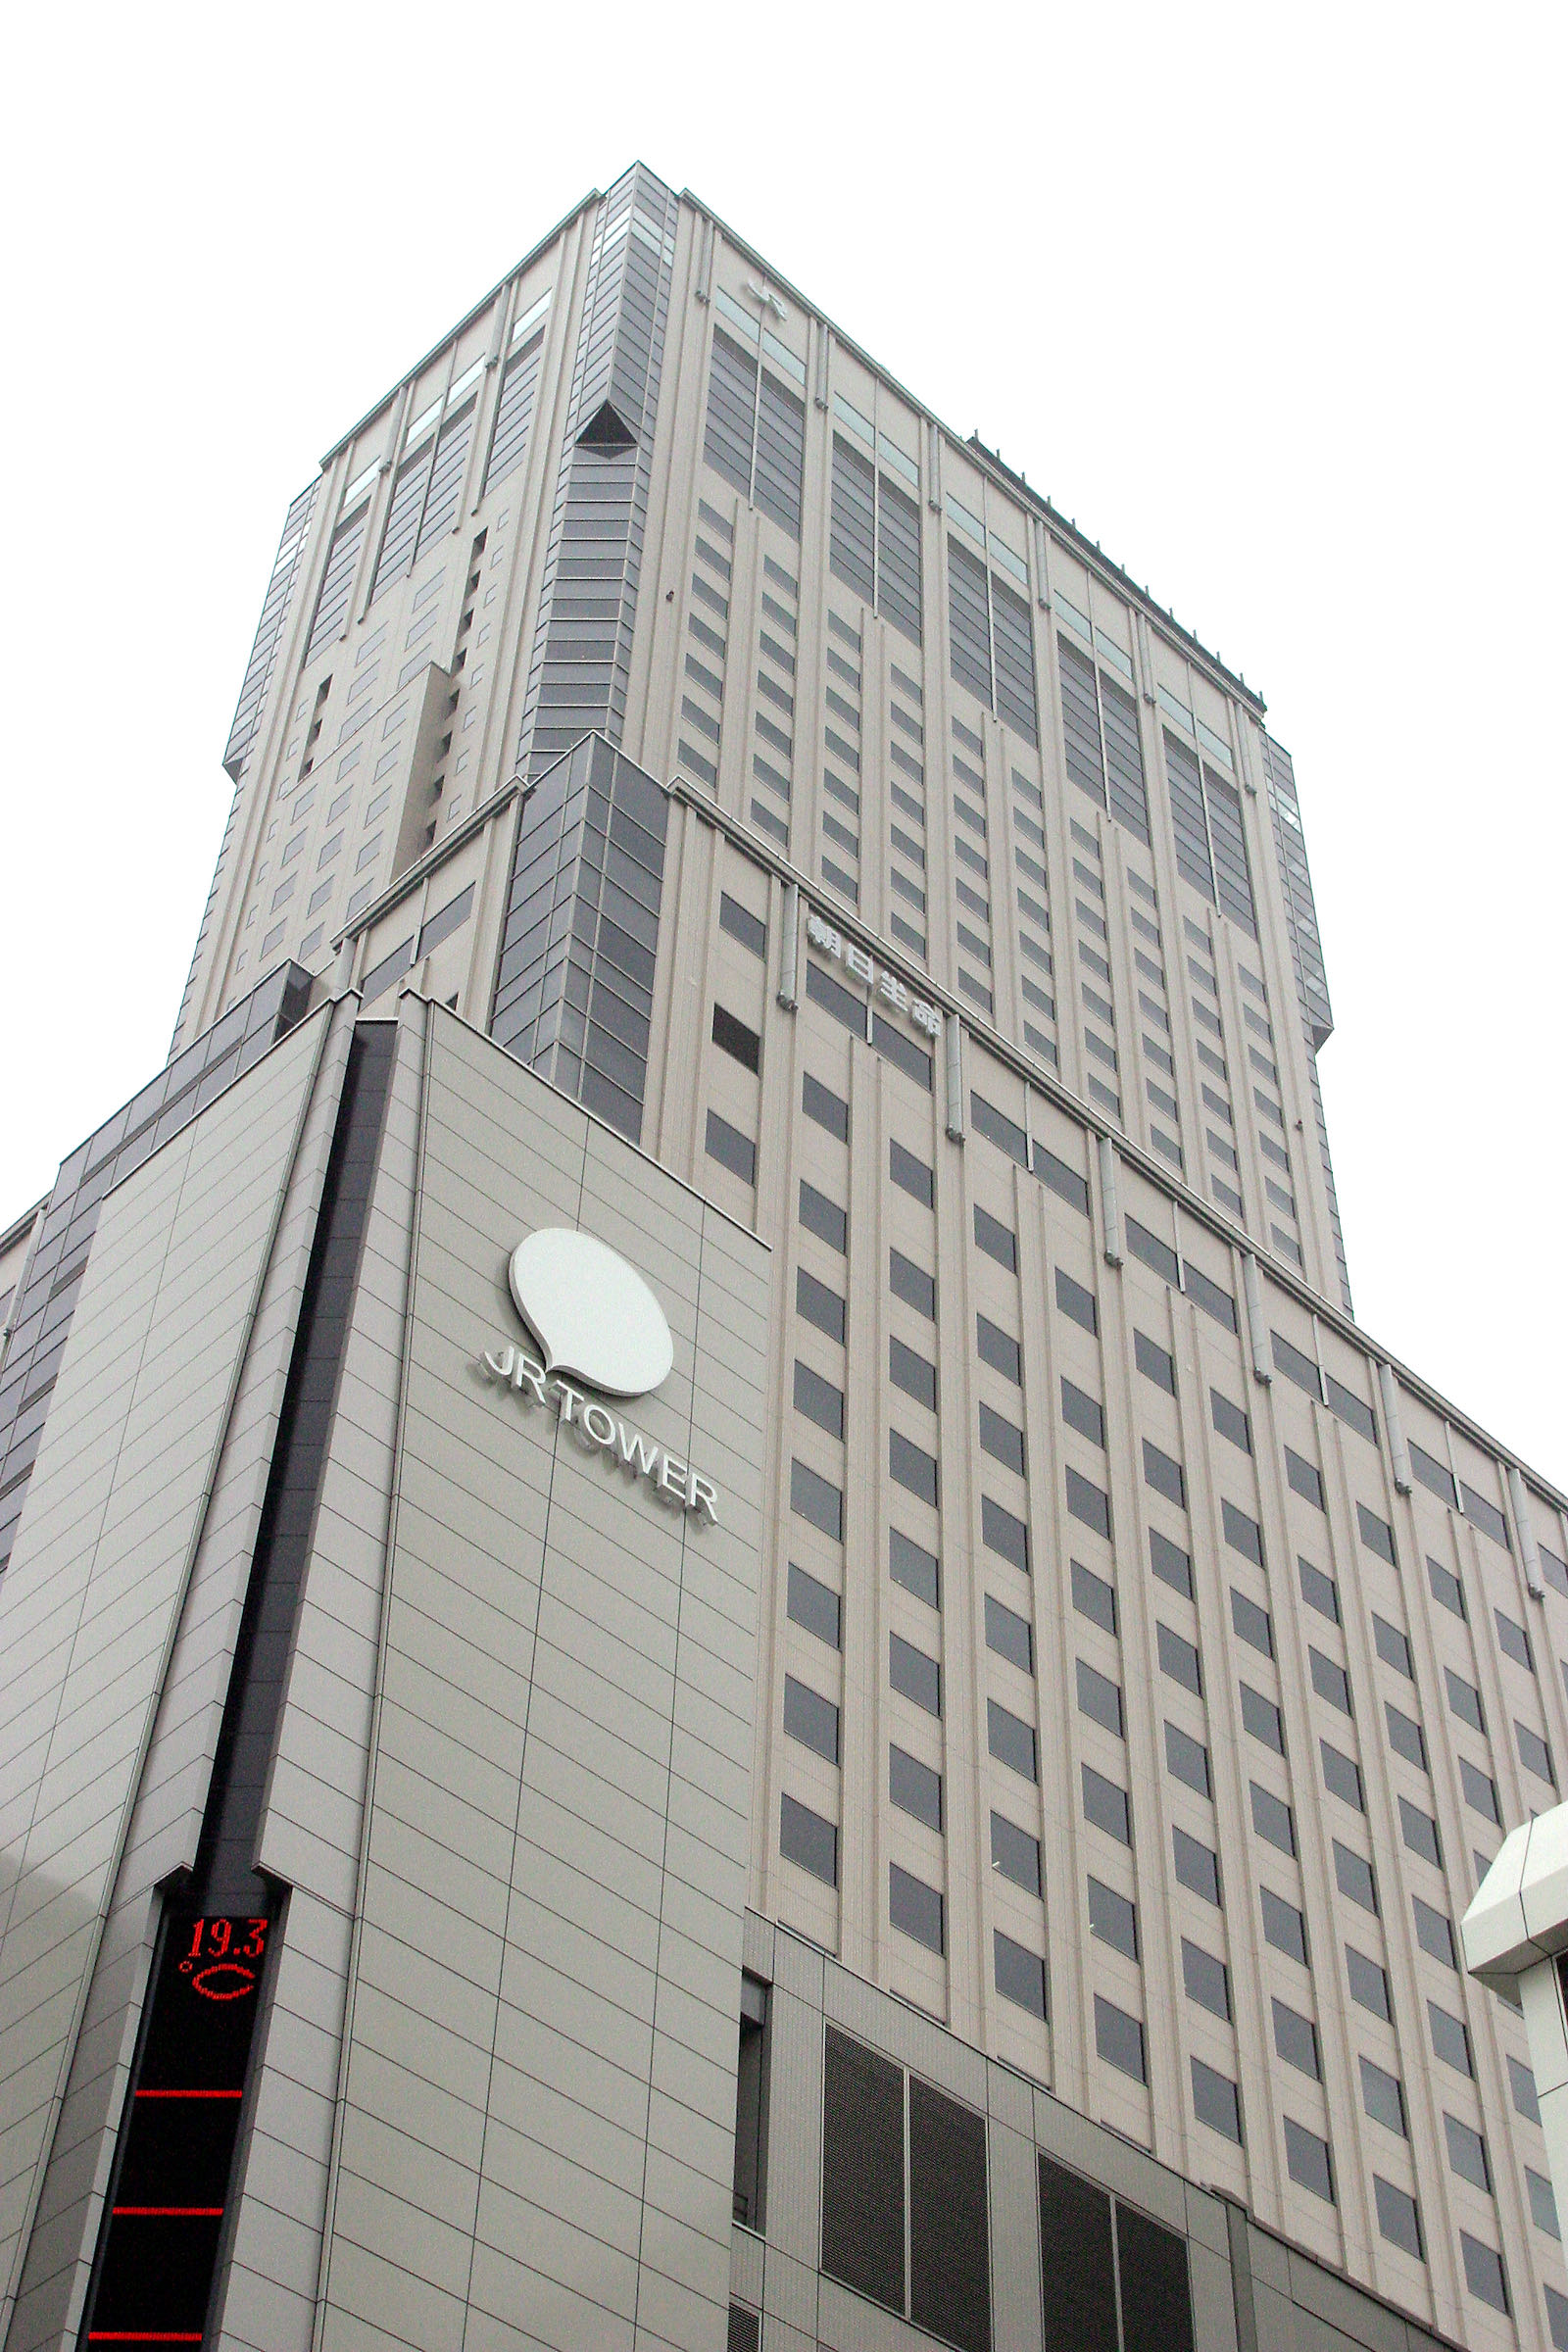 JR Tower Logo | Takenobu Igarashi